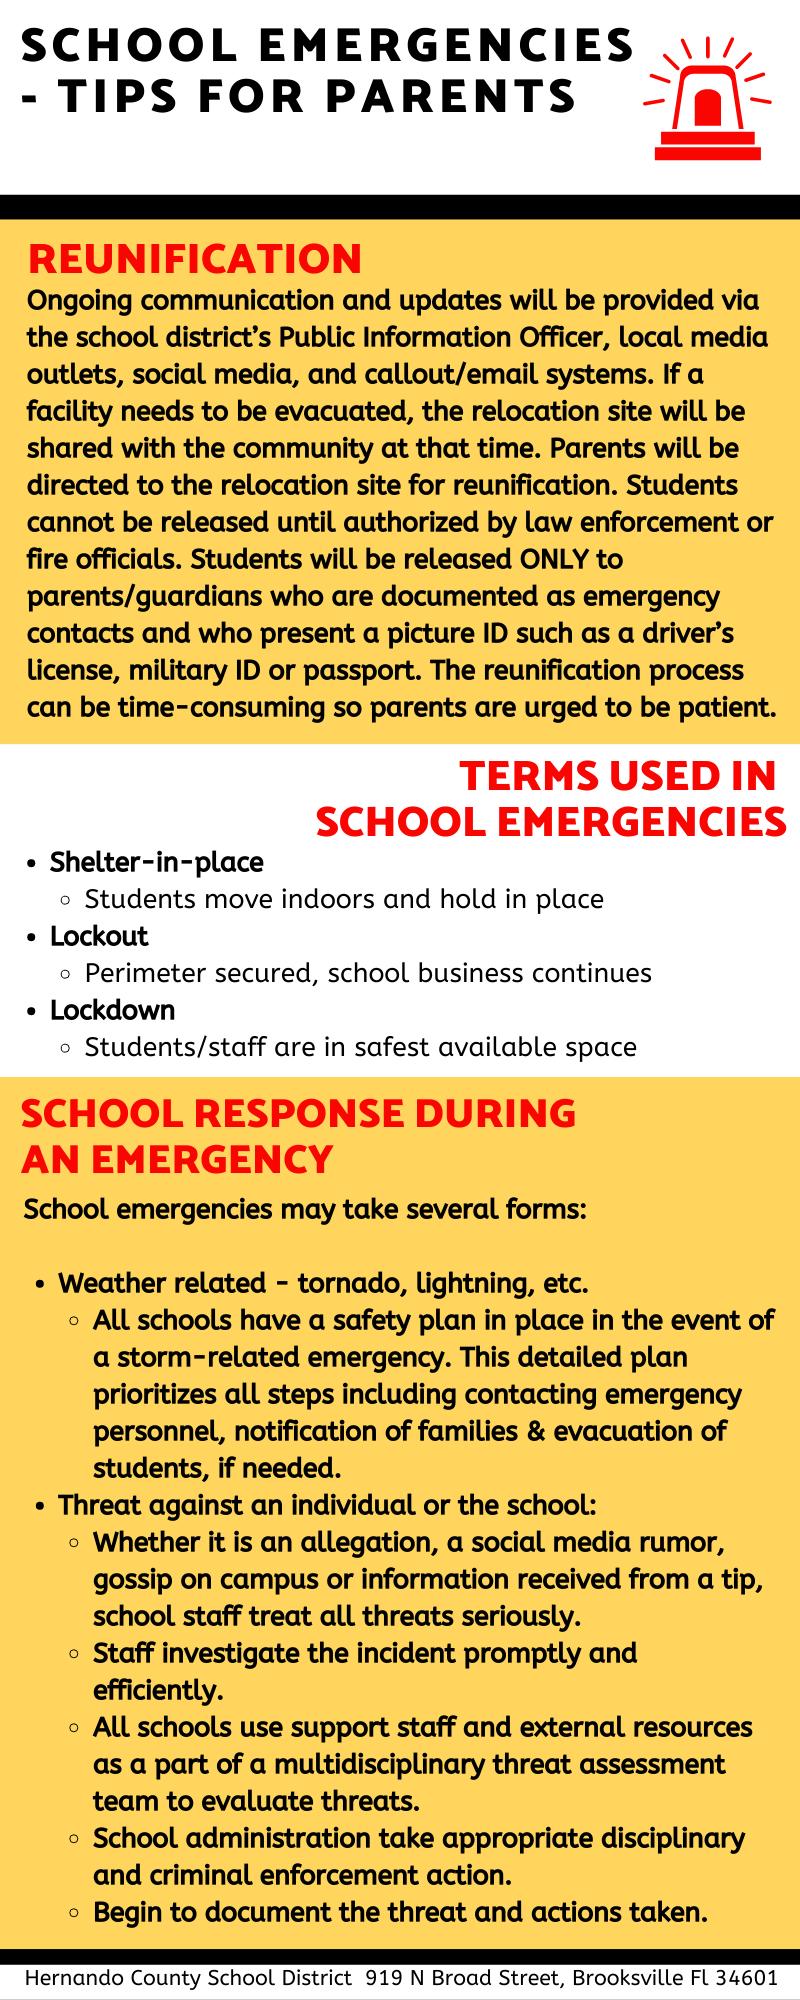 TERMS USED IN SCHOOL EMERGENCIES